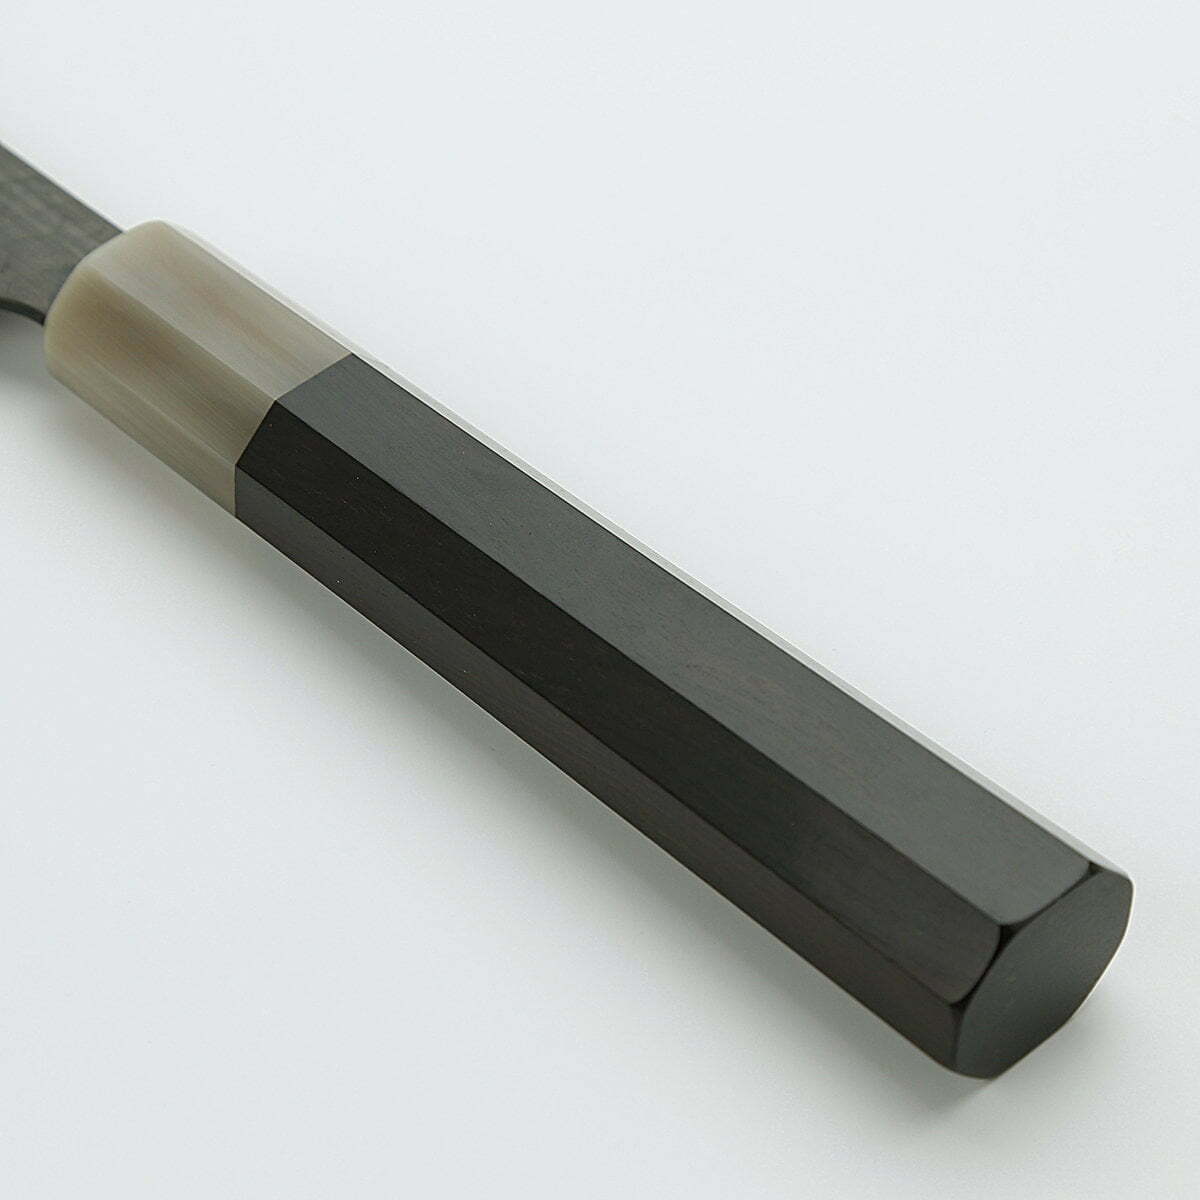 סכין שף רב-תכליתית גִּיוּטוֹ 270מ״מ מחושלת בעבודת יד 3 שכבות: פלדת פחמן יפנית מתקדמת מסוג R2/SG2 עטופה פלדת אל-חלד גימור קורואיצ׳י שחור עם ריקוע פטיש ניגארה יפן